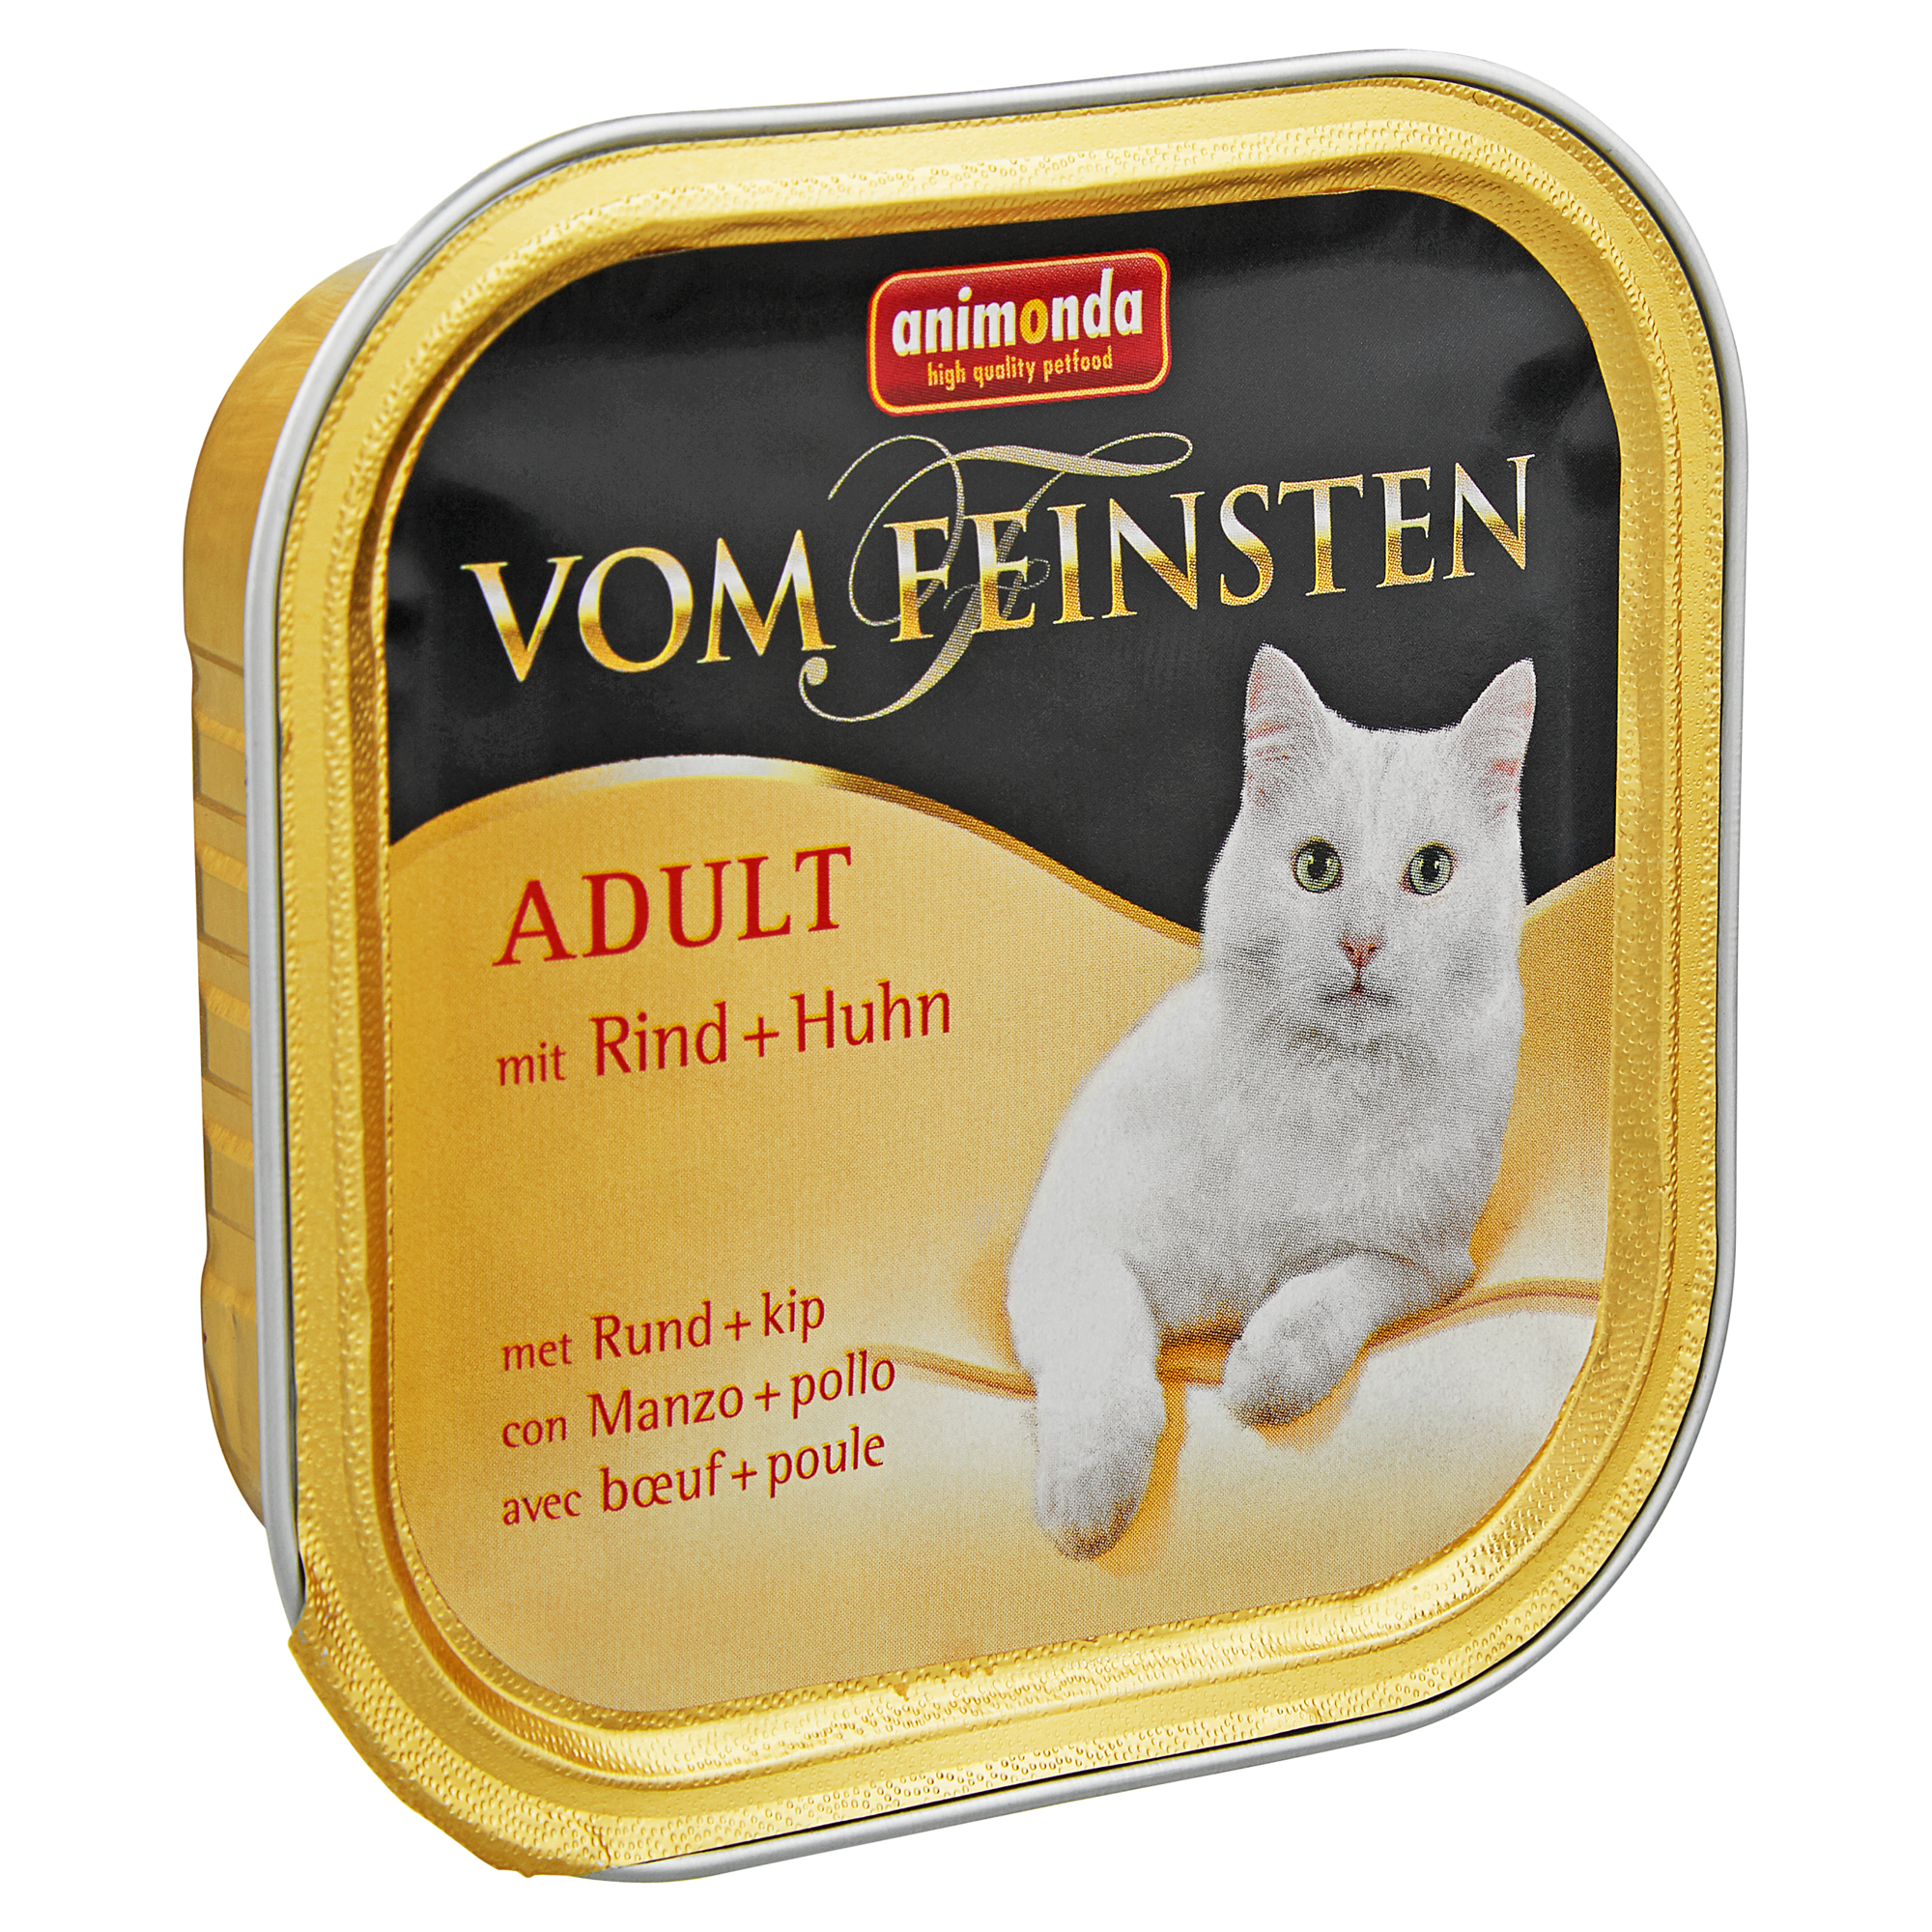 Katzennassfutter "Vom Feinsten" Adult mit Rind/Huhn 100 g + product picture